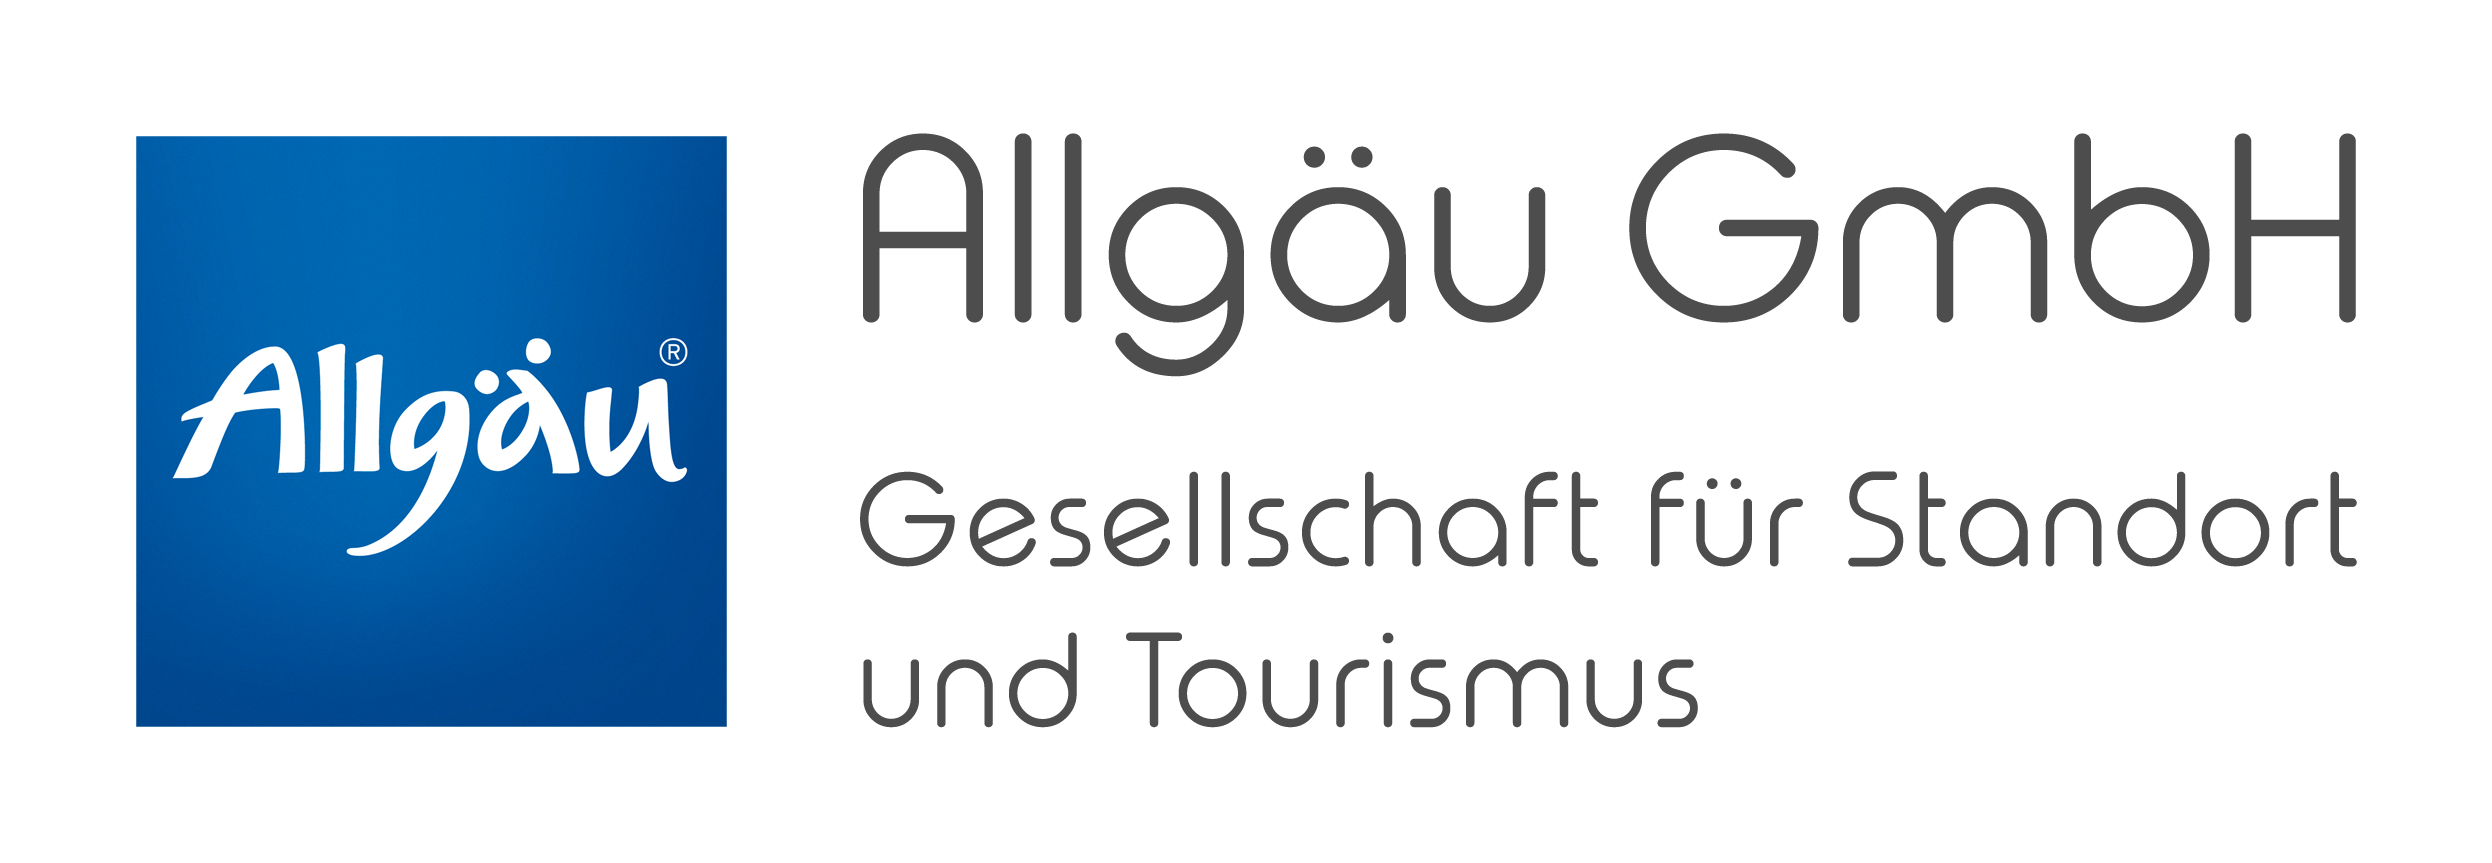 Allgäu GmbH - Gesellschaft für Standort und Tourismus